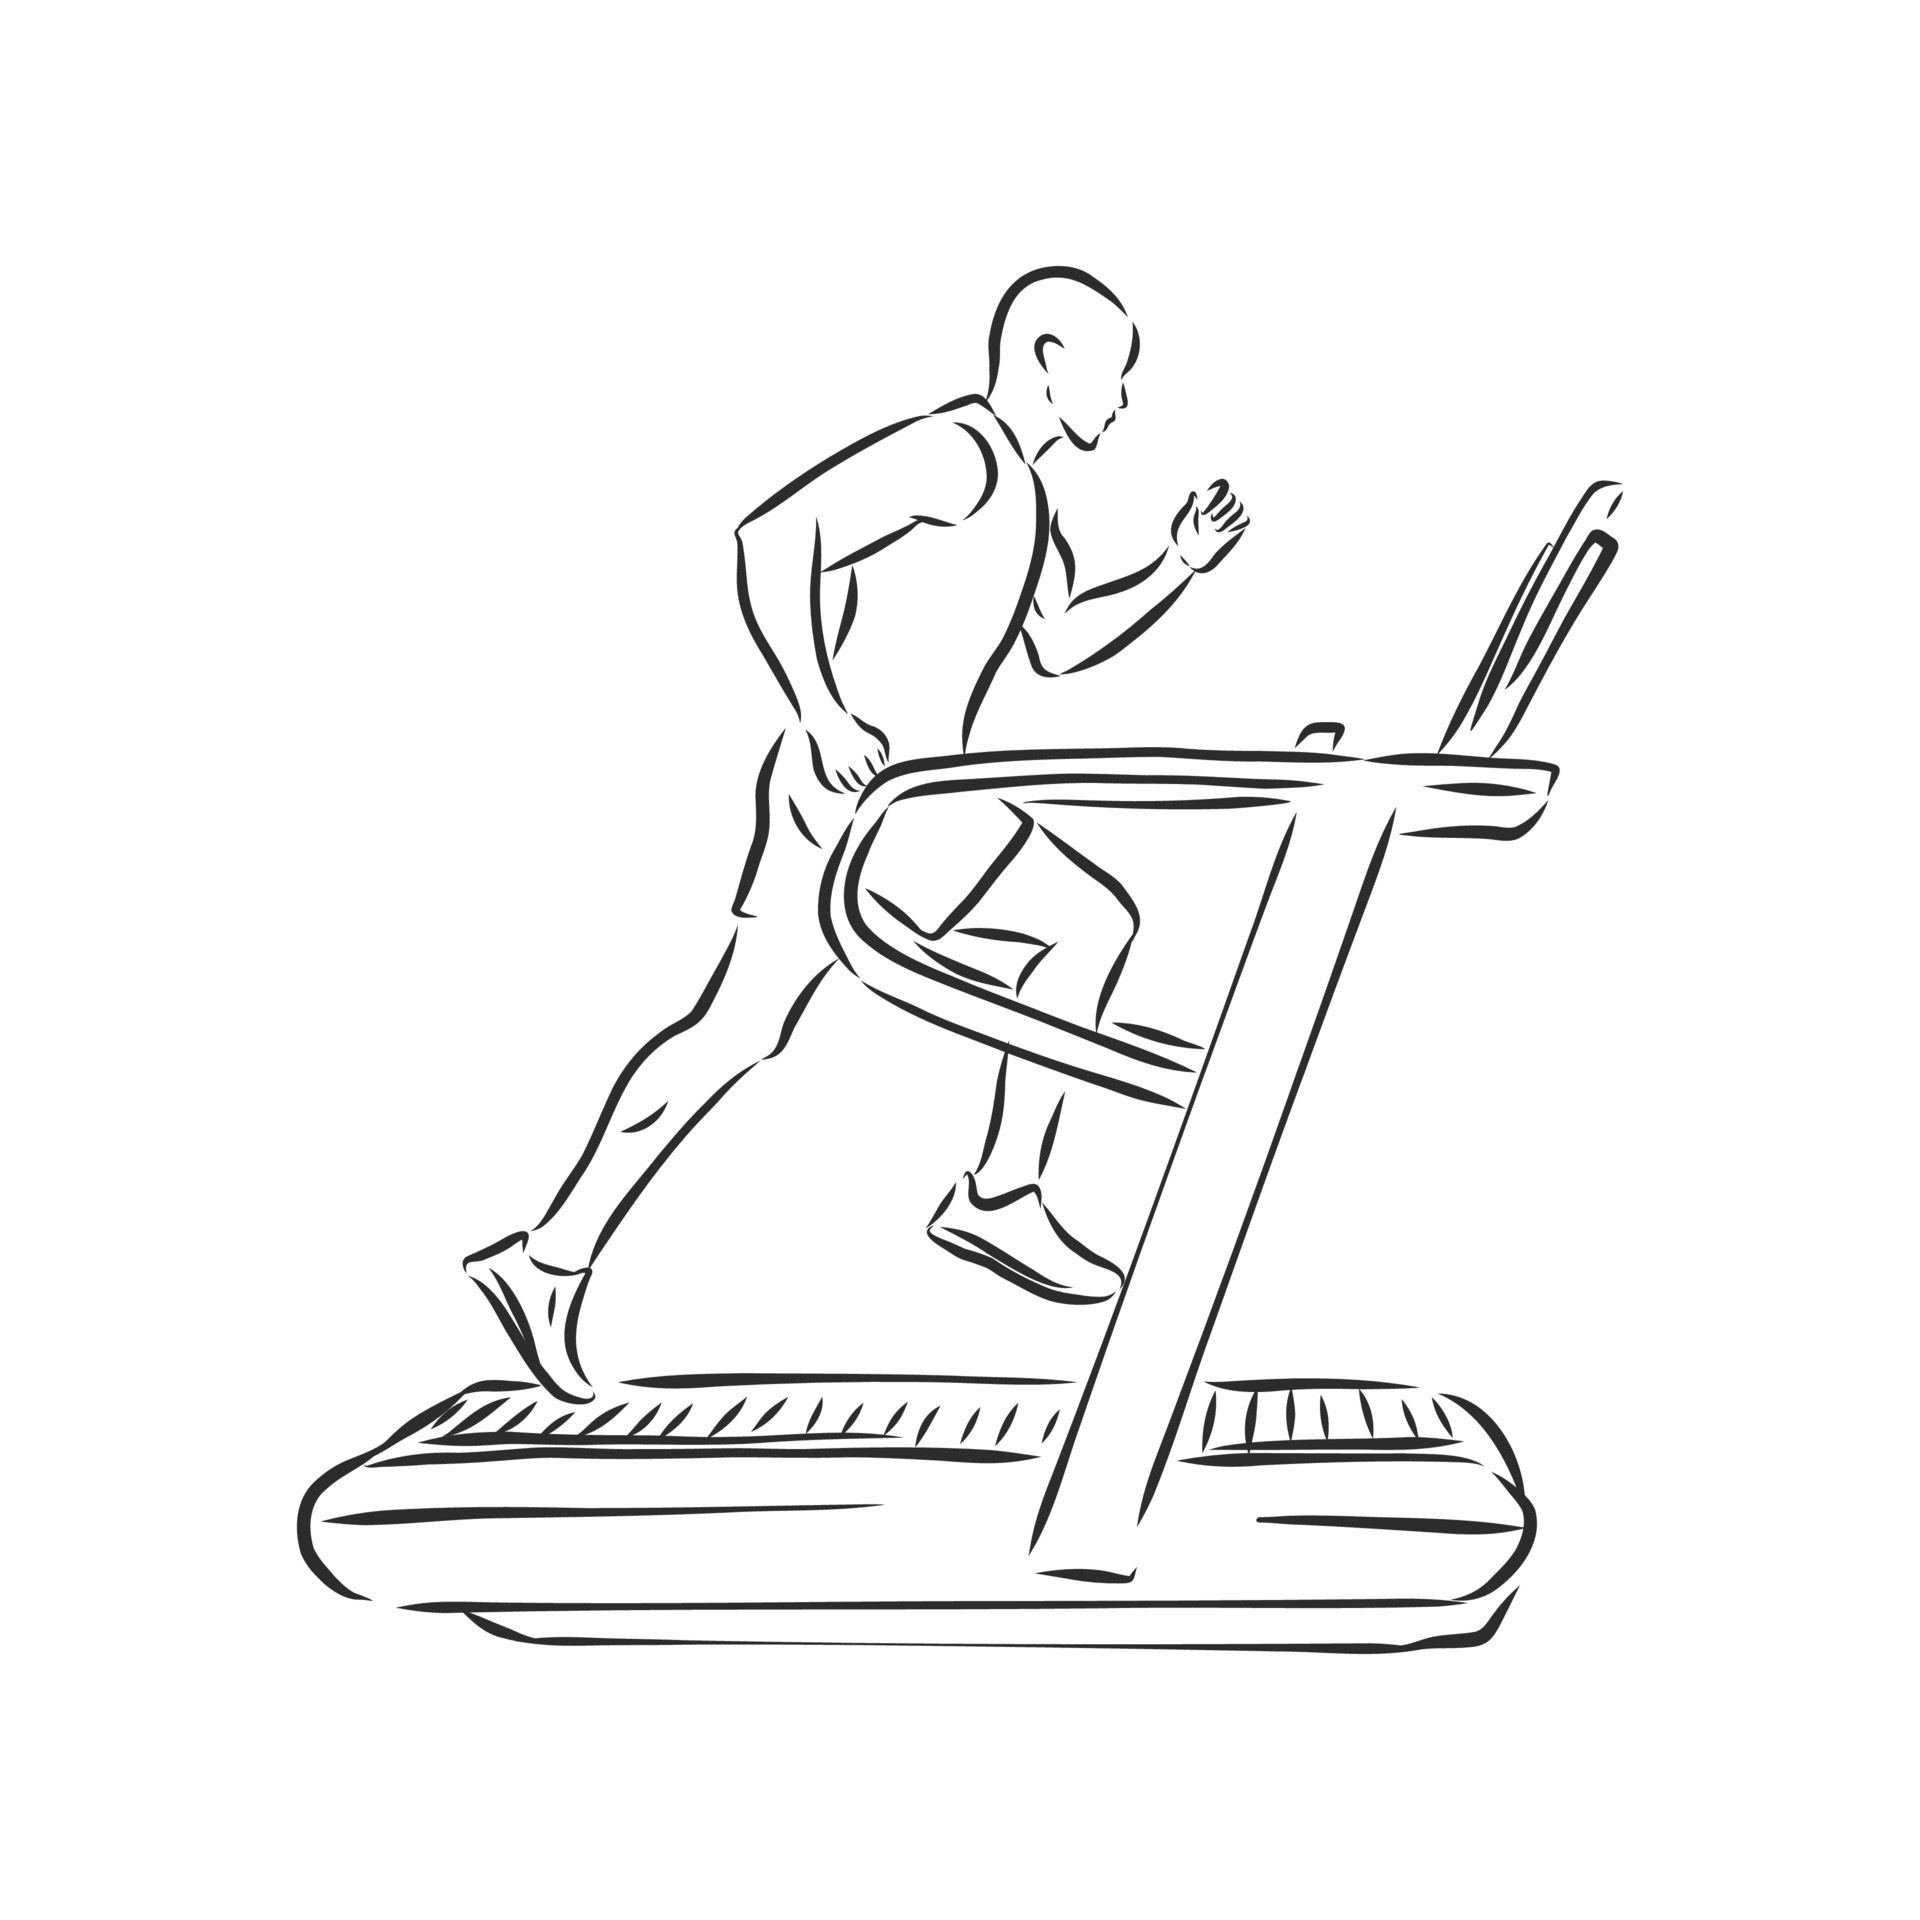 sports trainer treadmill vector sketch  Stock Illustration 74920404   PIXTA